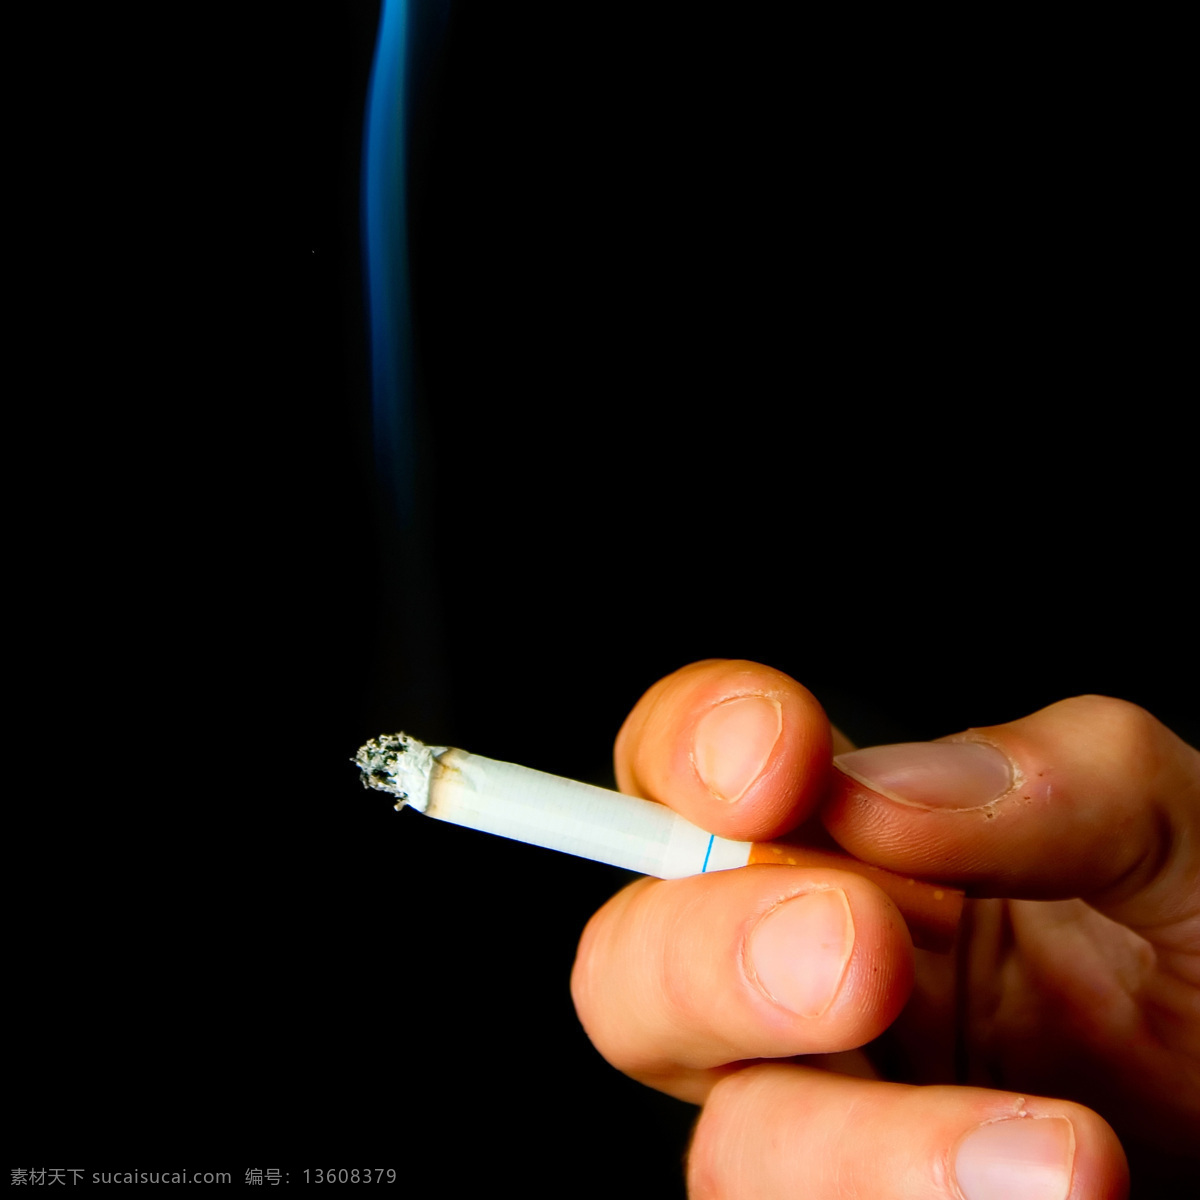 公益 健康 生活百科 生活素材 危害 香烟 烟 燃 燃着的香烟 烟头 健康公益素材 展板 公益展板设计